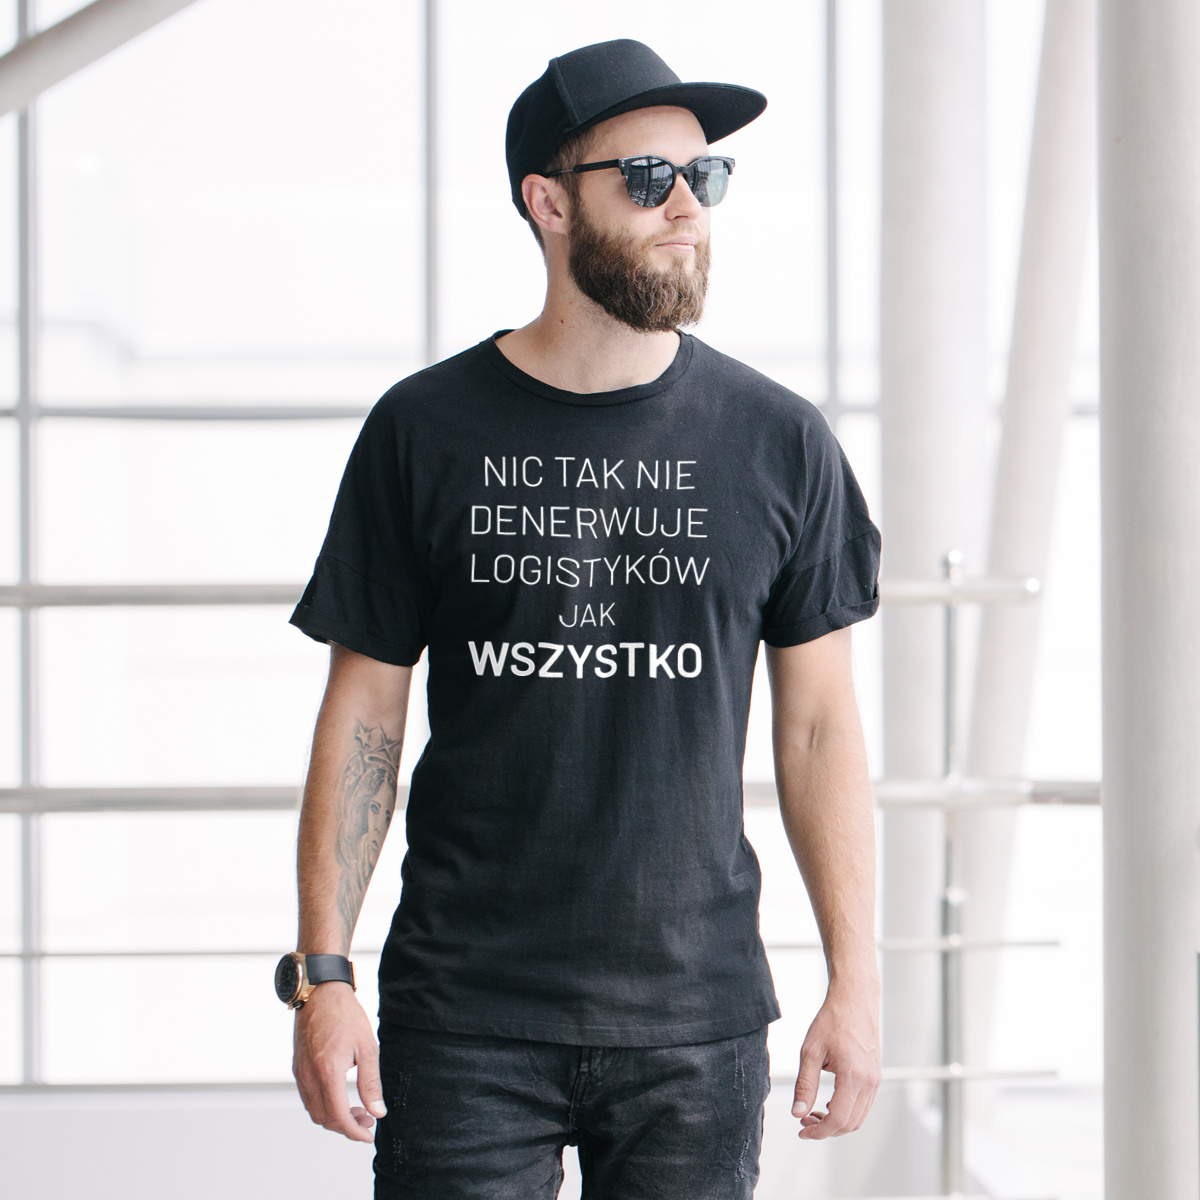 Nic Tak Nie Denerwuje Logistyków Jak Wszystko - Męska Koszulka Czarna